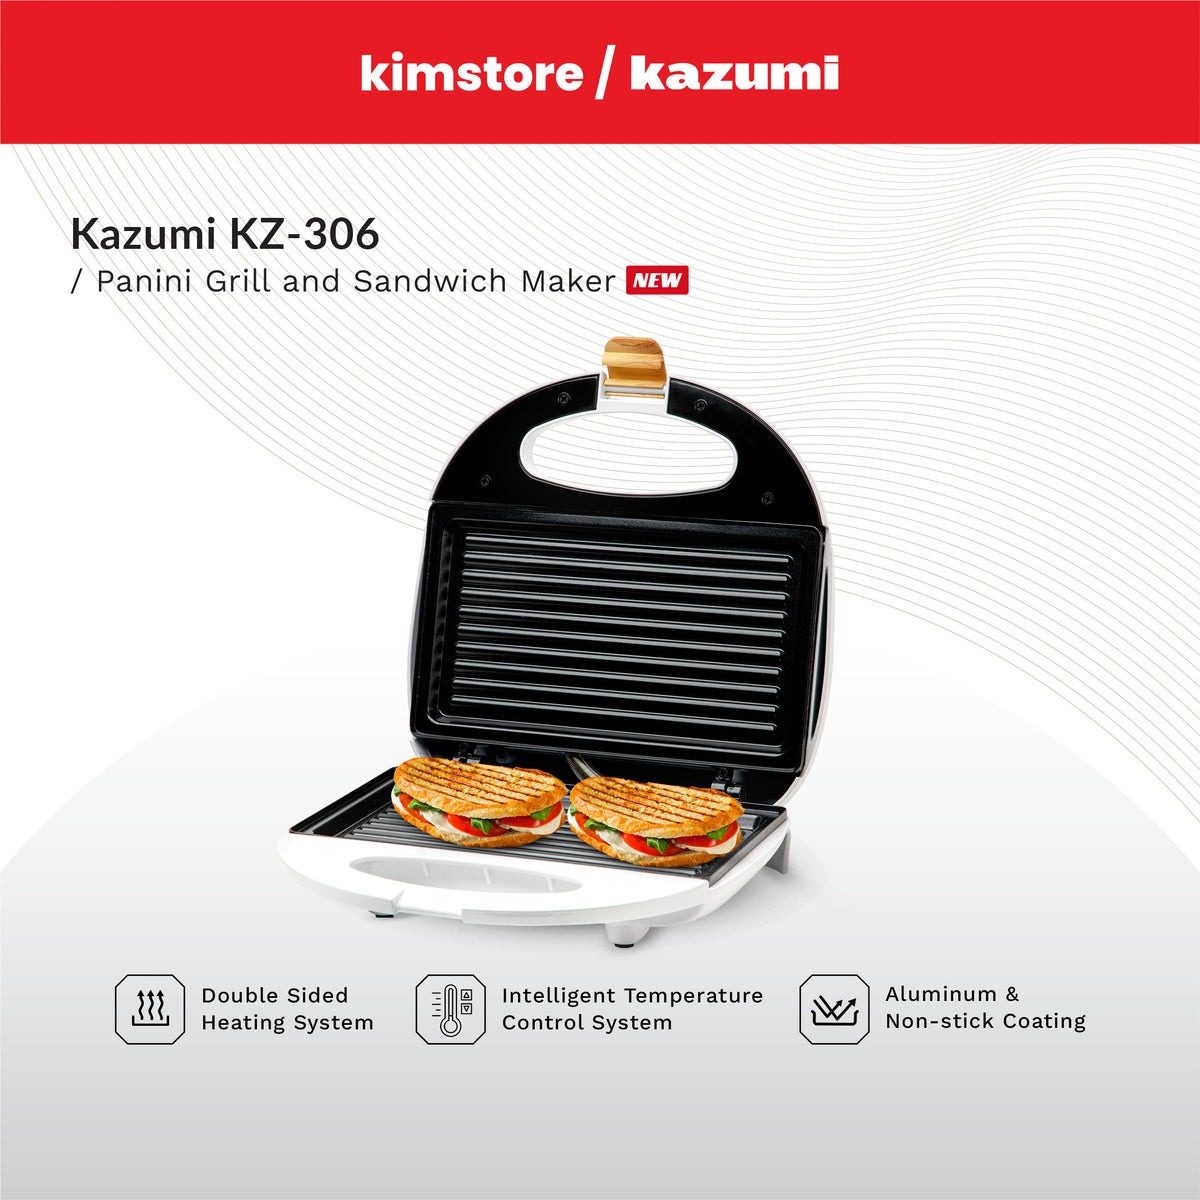 KAZUMI KZ-306 Panini Grill and Sandwich Maker